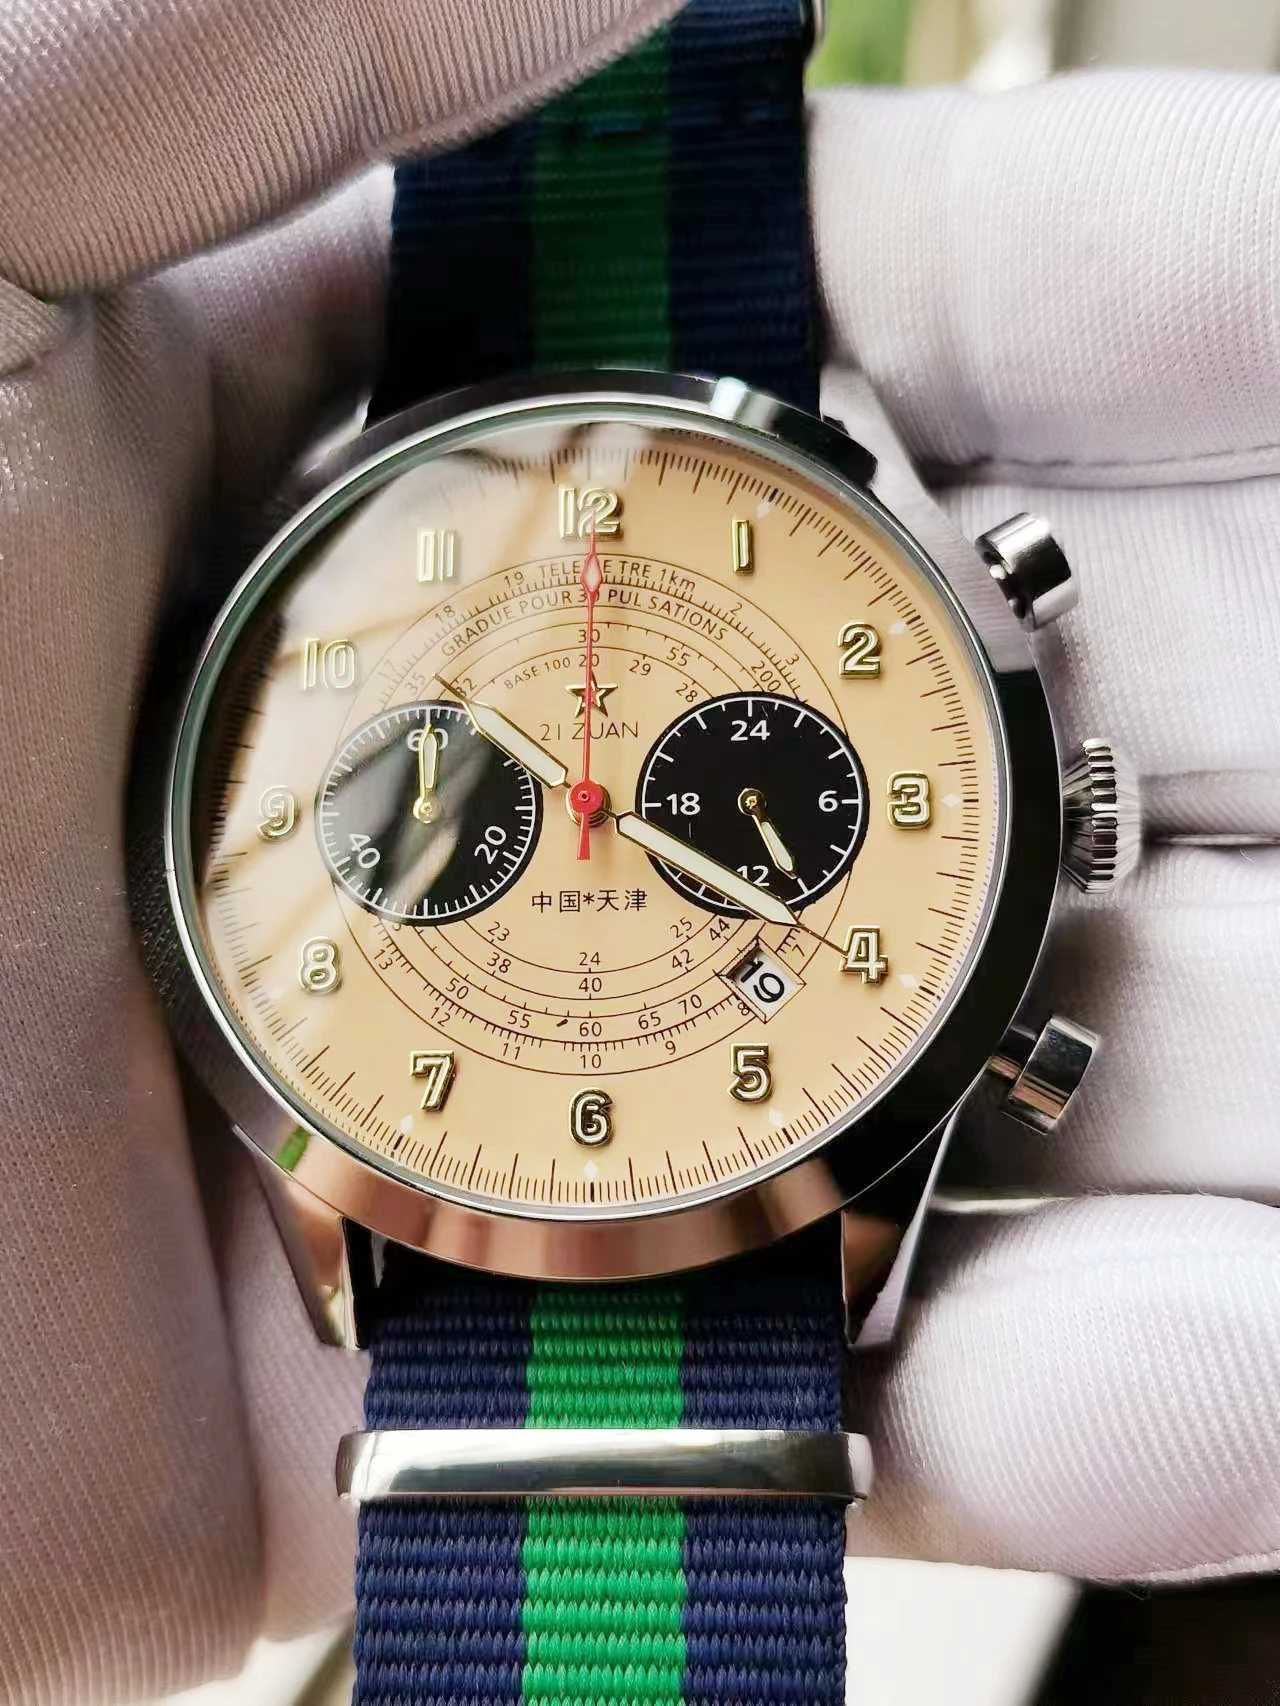 Outros relógios Pilot 1963 Time Code Watch Night Glow Multi funcional 5 pinos Panda Pan Retro Aviation Flight Hardman Military 1901 Watch J240326